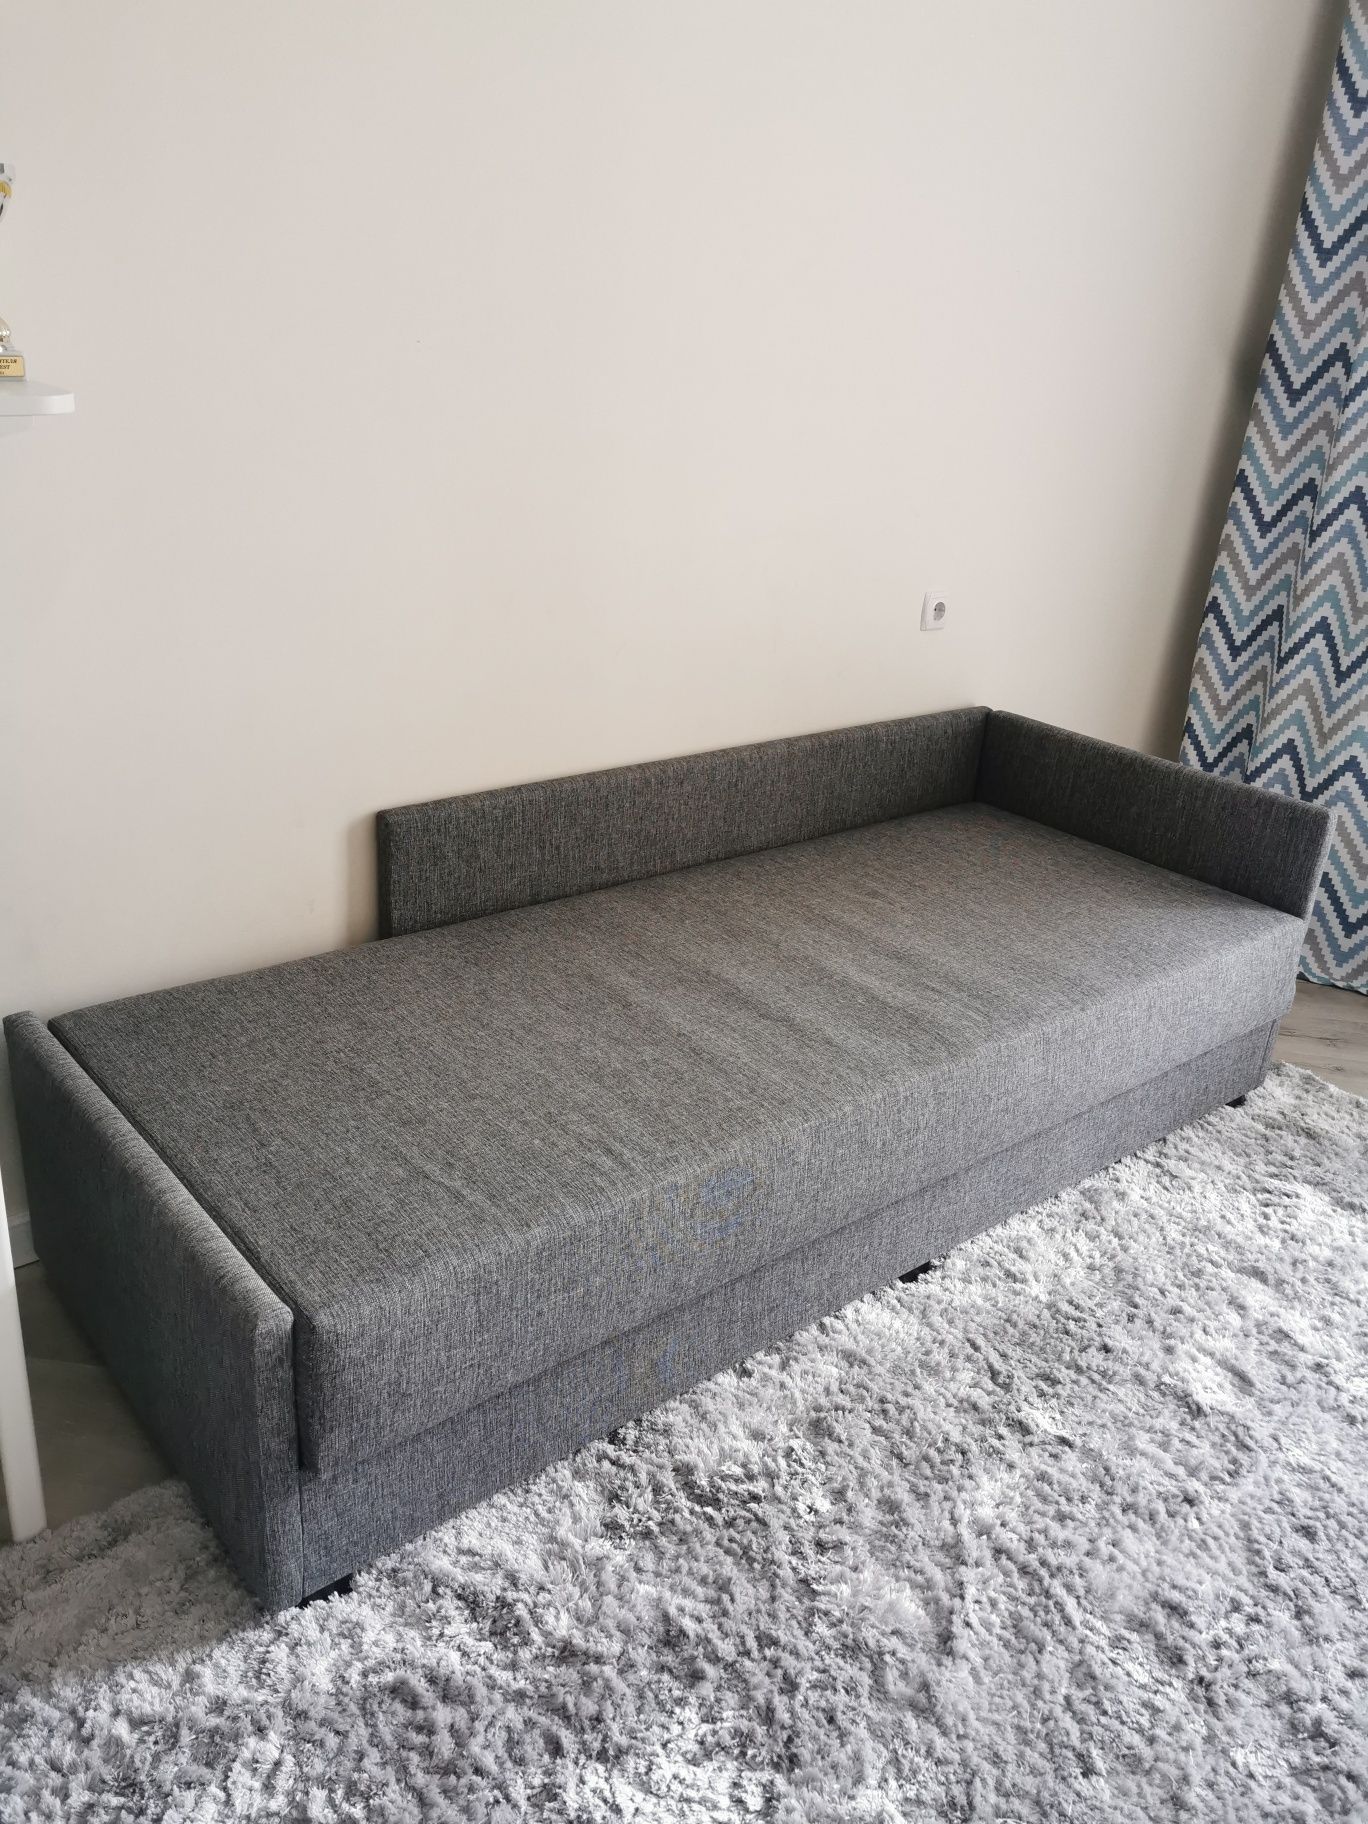 Кровать-кушетка НЭРСНЕС Сандсбру, серый 80x200 см. IKEA